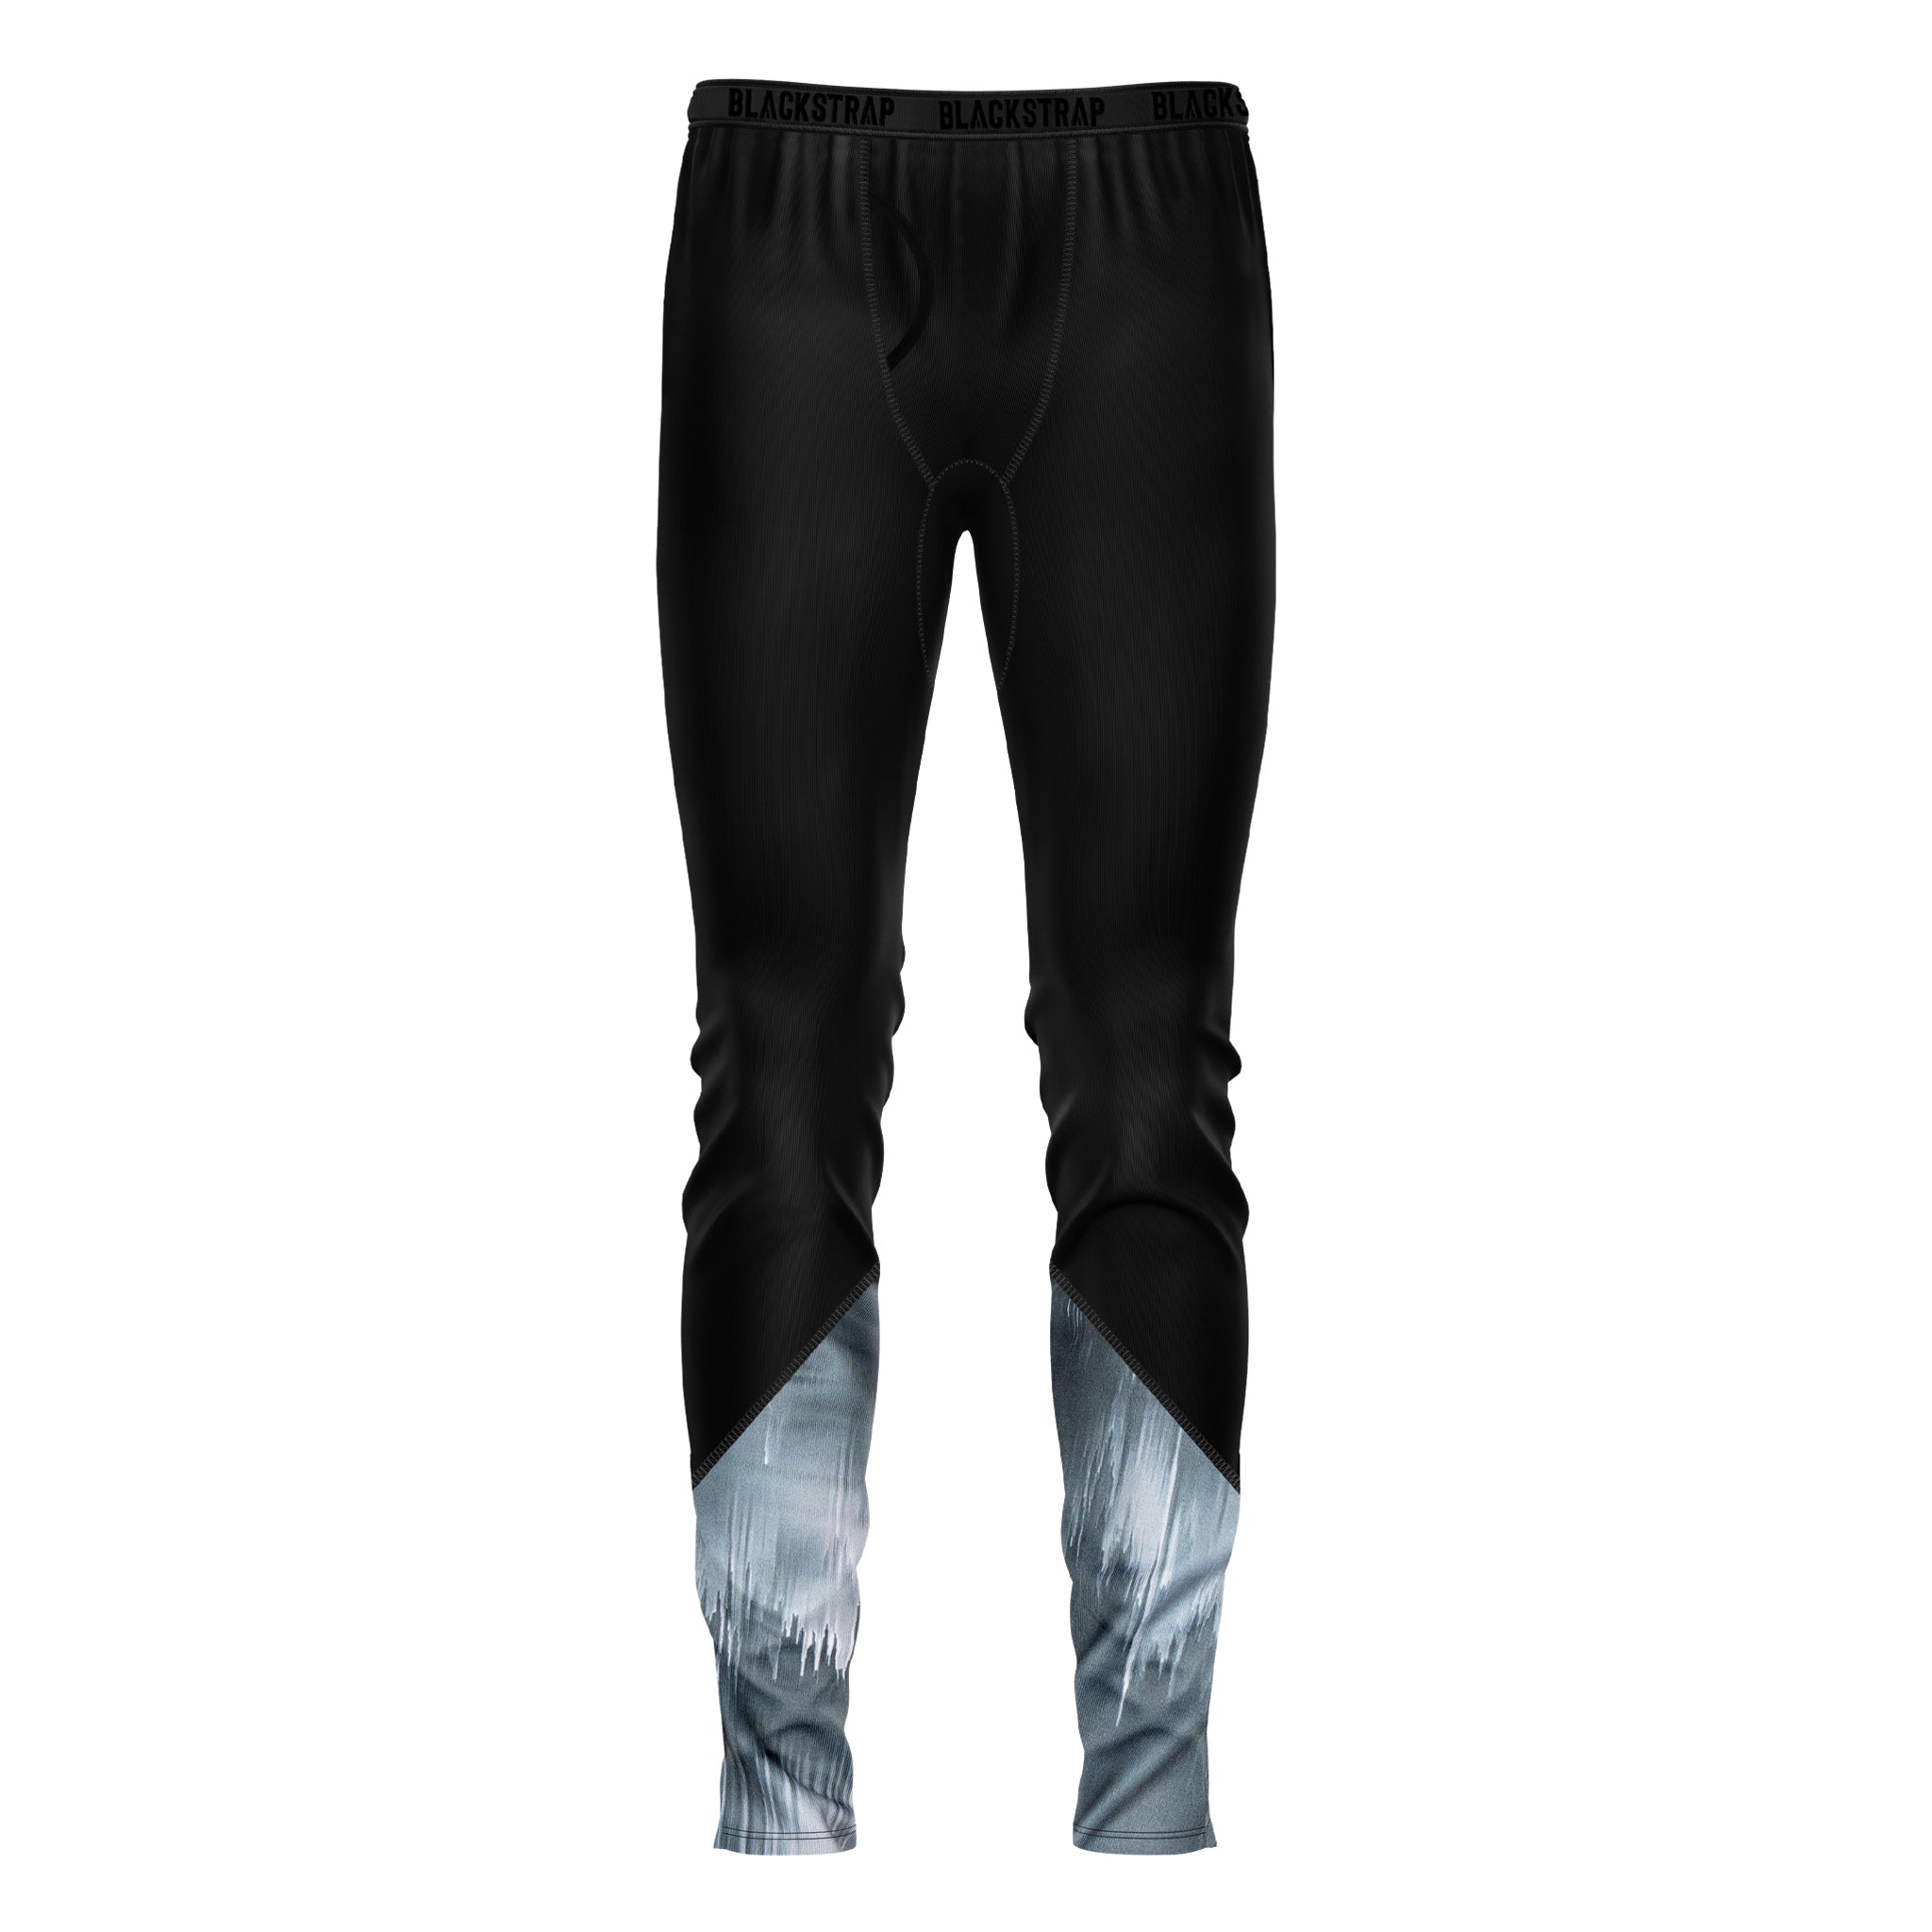 Men's Therma Base Layer Pants BlackStrap Glitch Gray S 